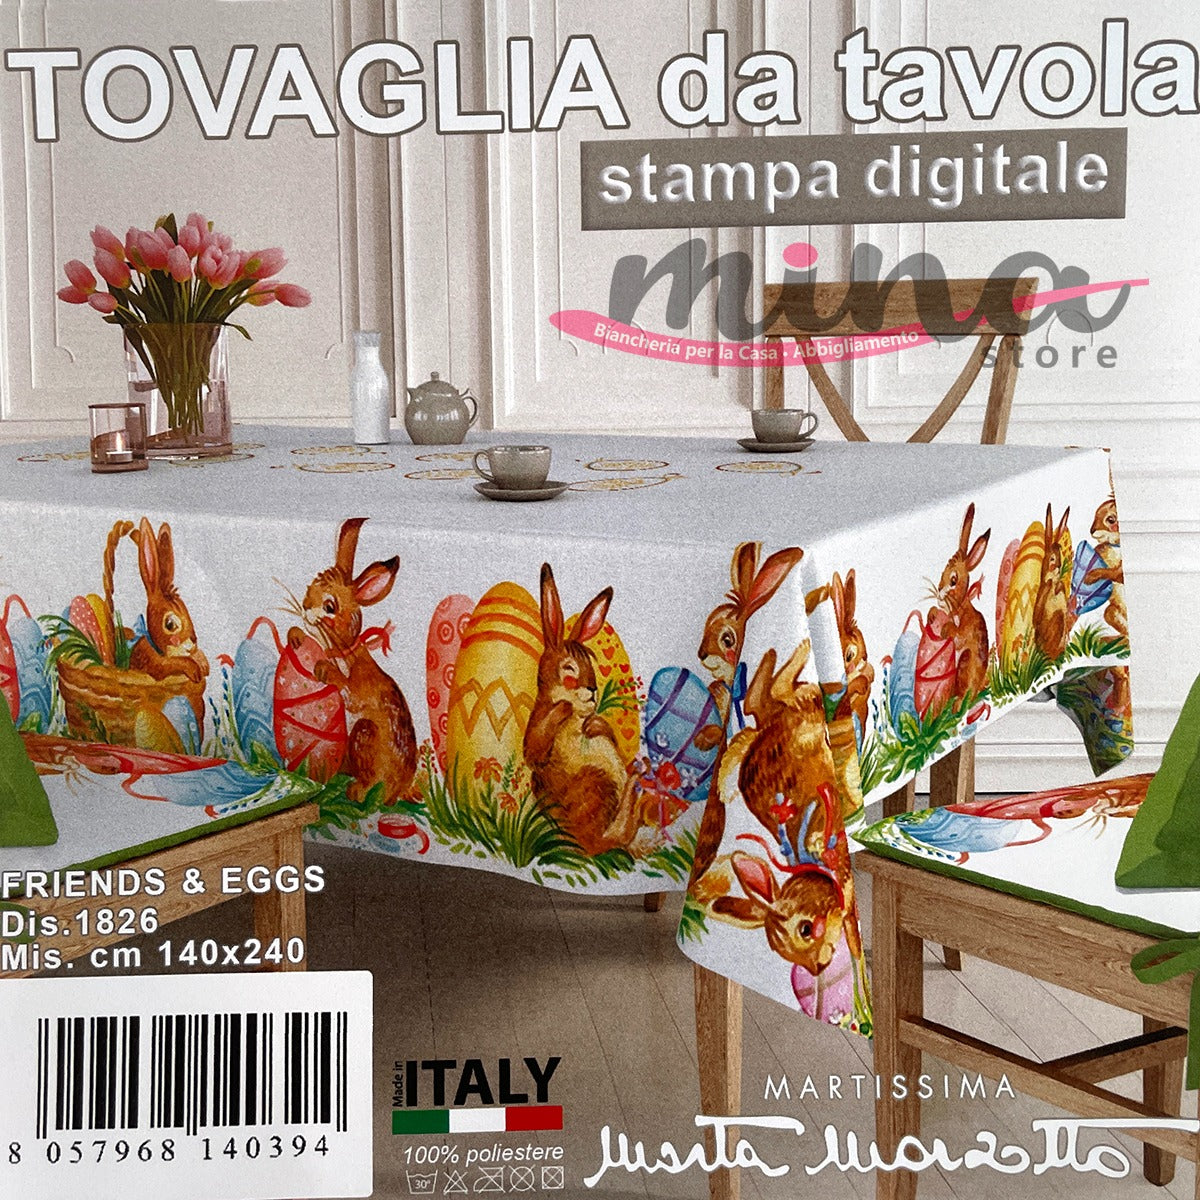 Tovaglia x6 o x12 disegno FRIENDS AND EGGS - Marta Marzotto, Made in Italy , tovaglia, copritavolo